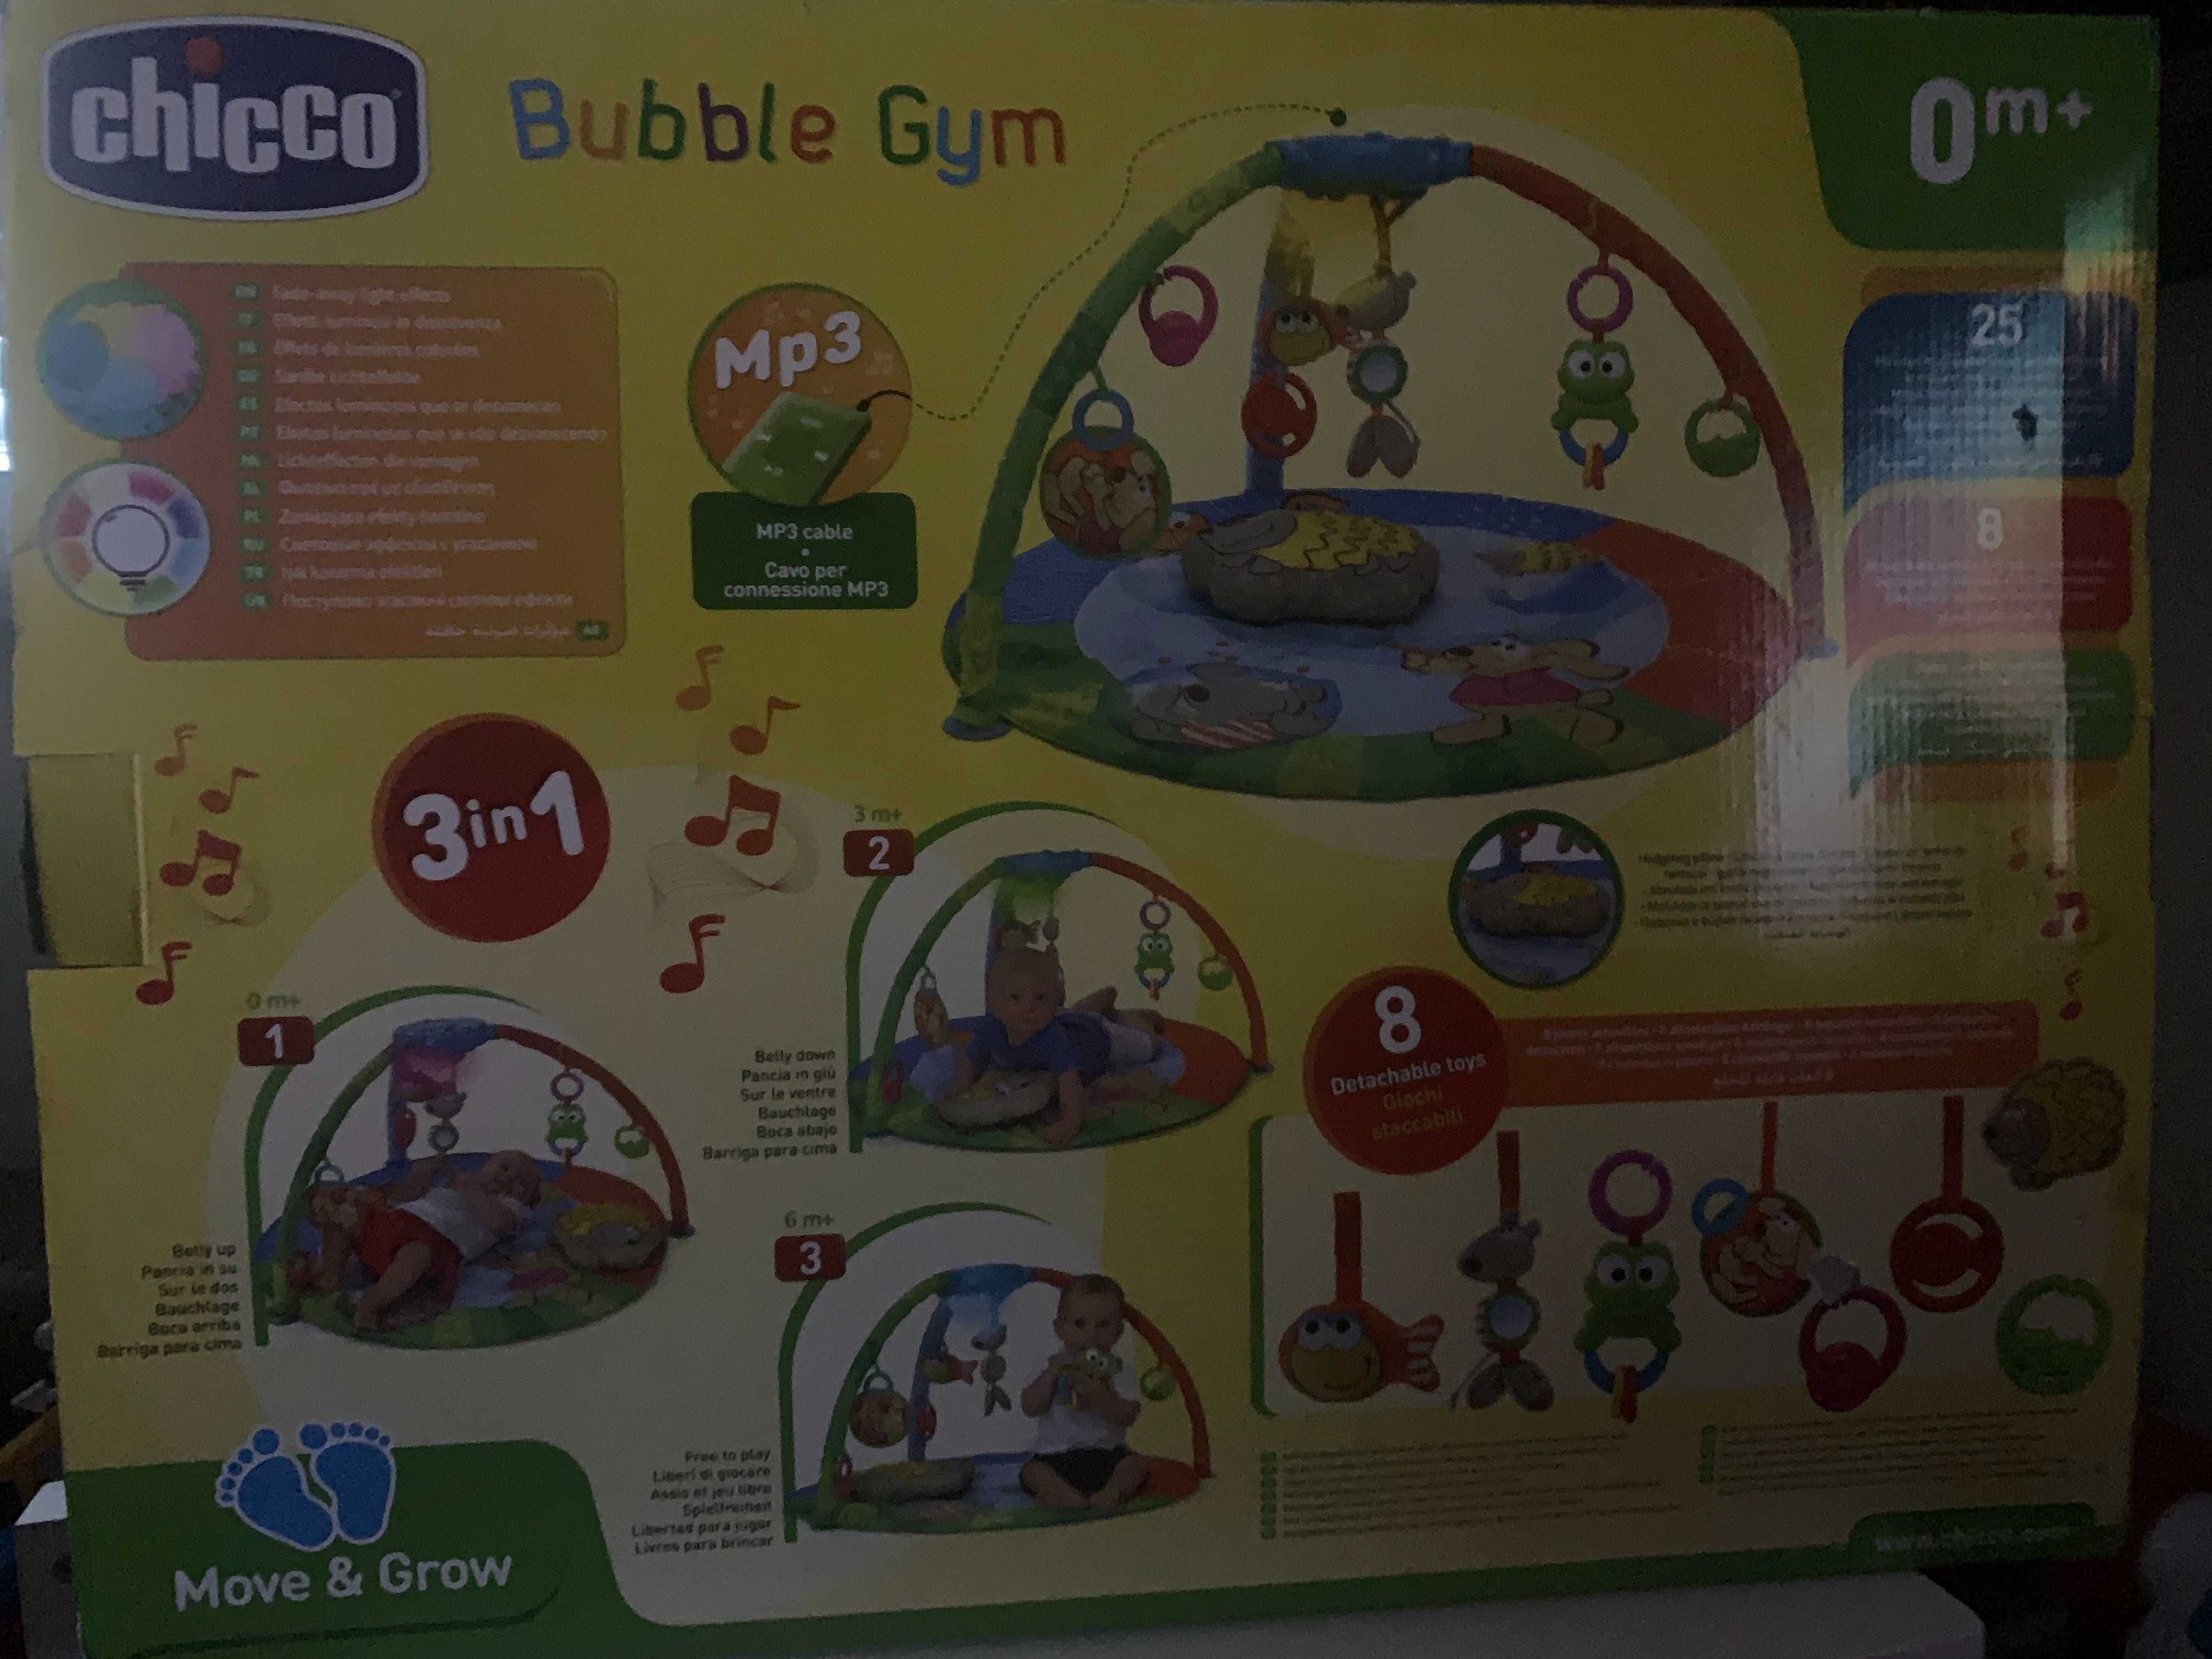 Tapete/Ginásio Bubble Gym da Chicco